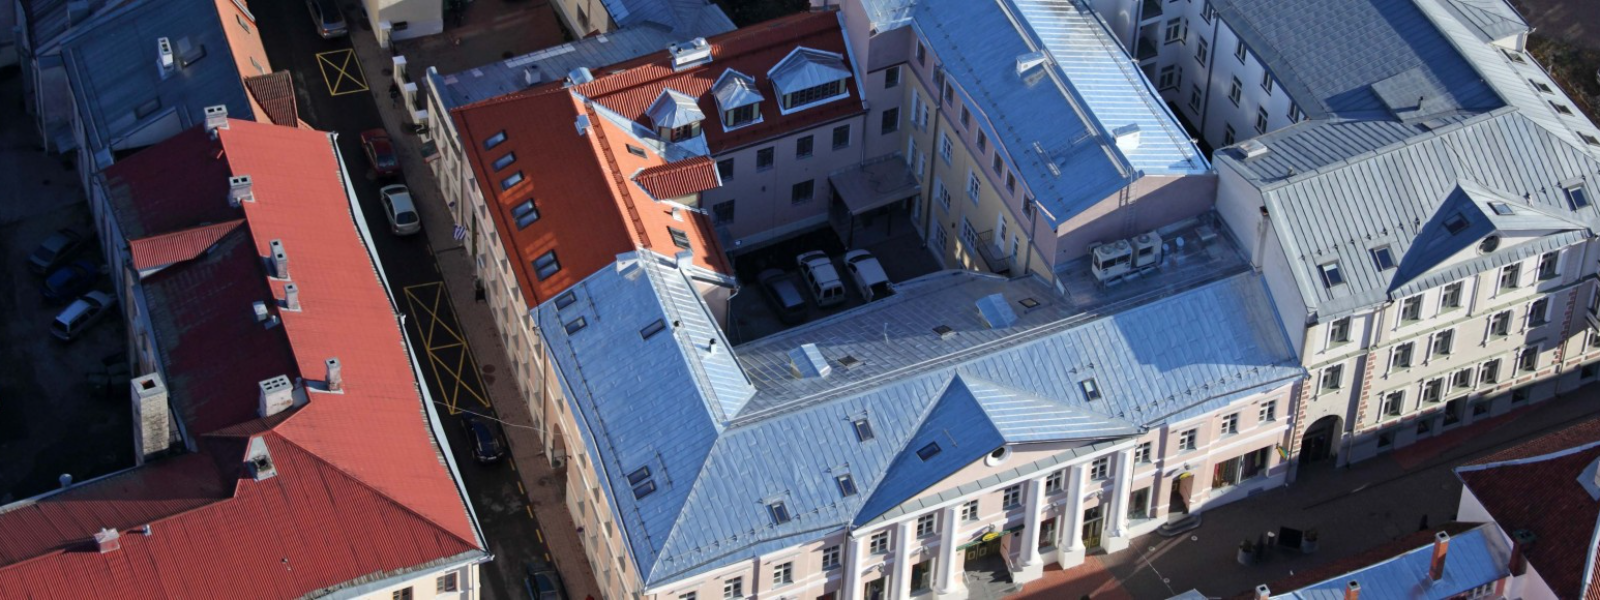 Roofing activities in Tartu